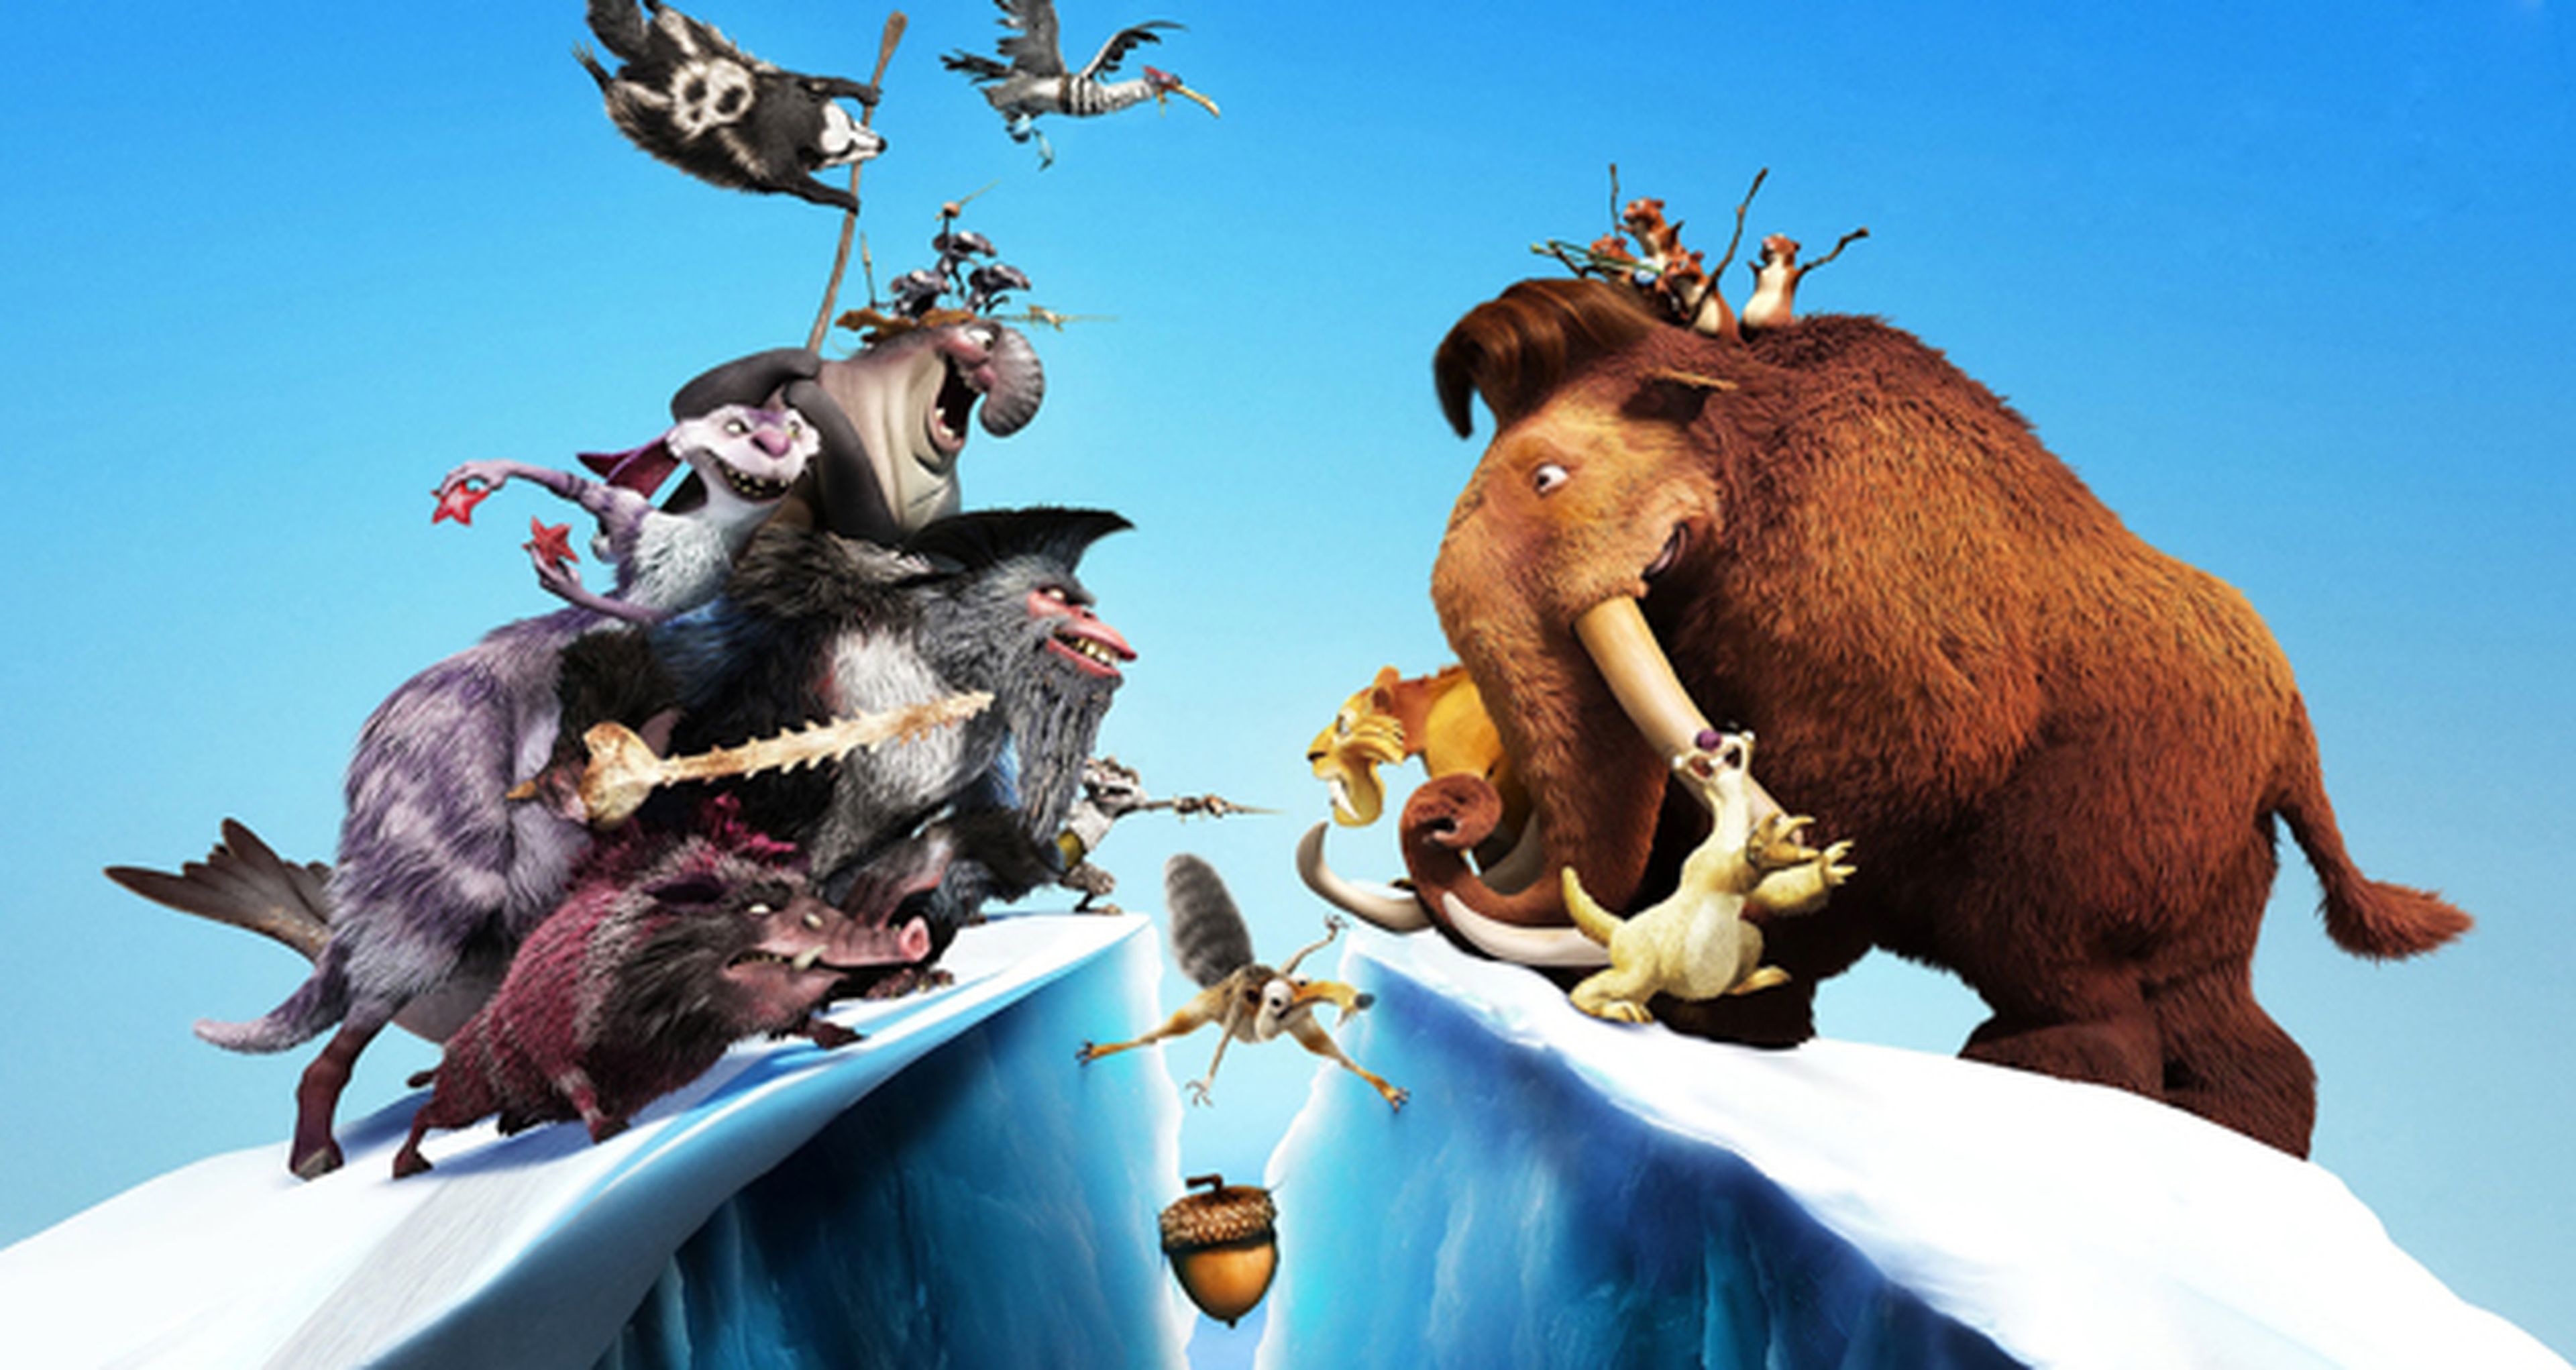 Ice Age 4 se estrena en Blu-Ray 3D y 2D, DVD y descarga